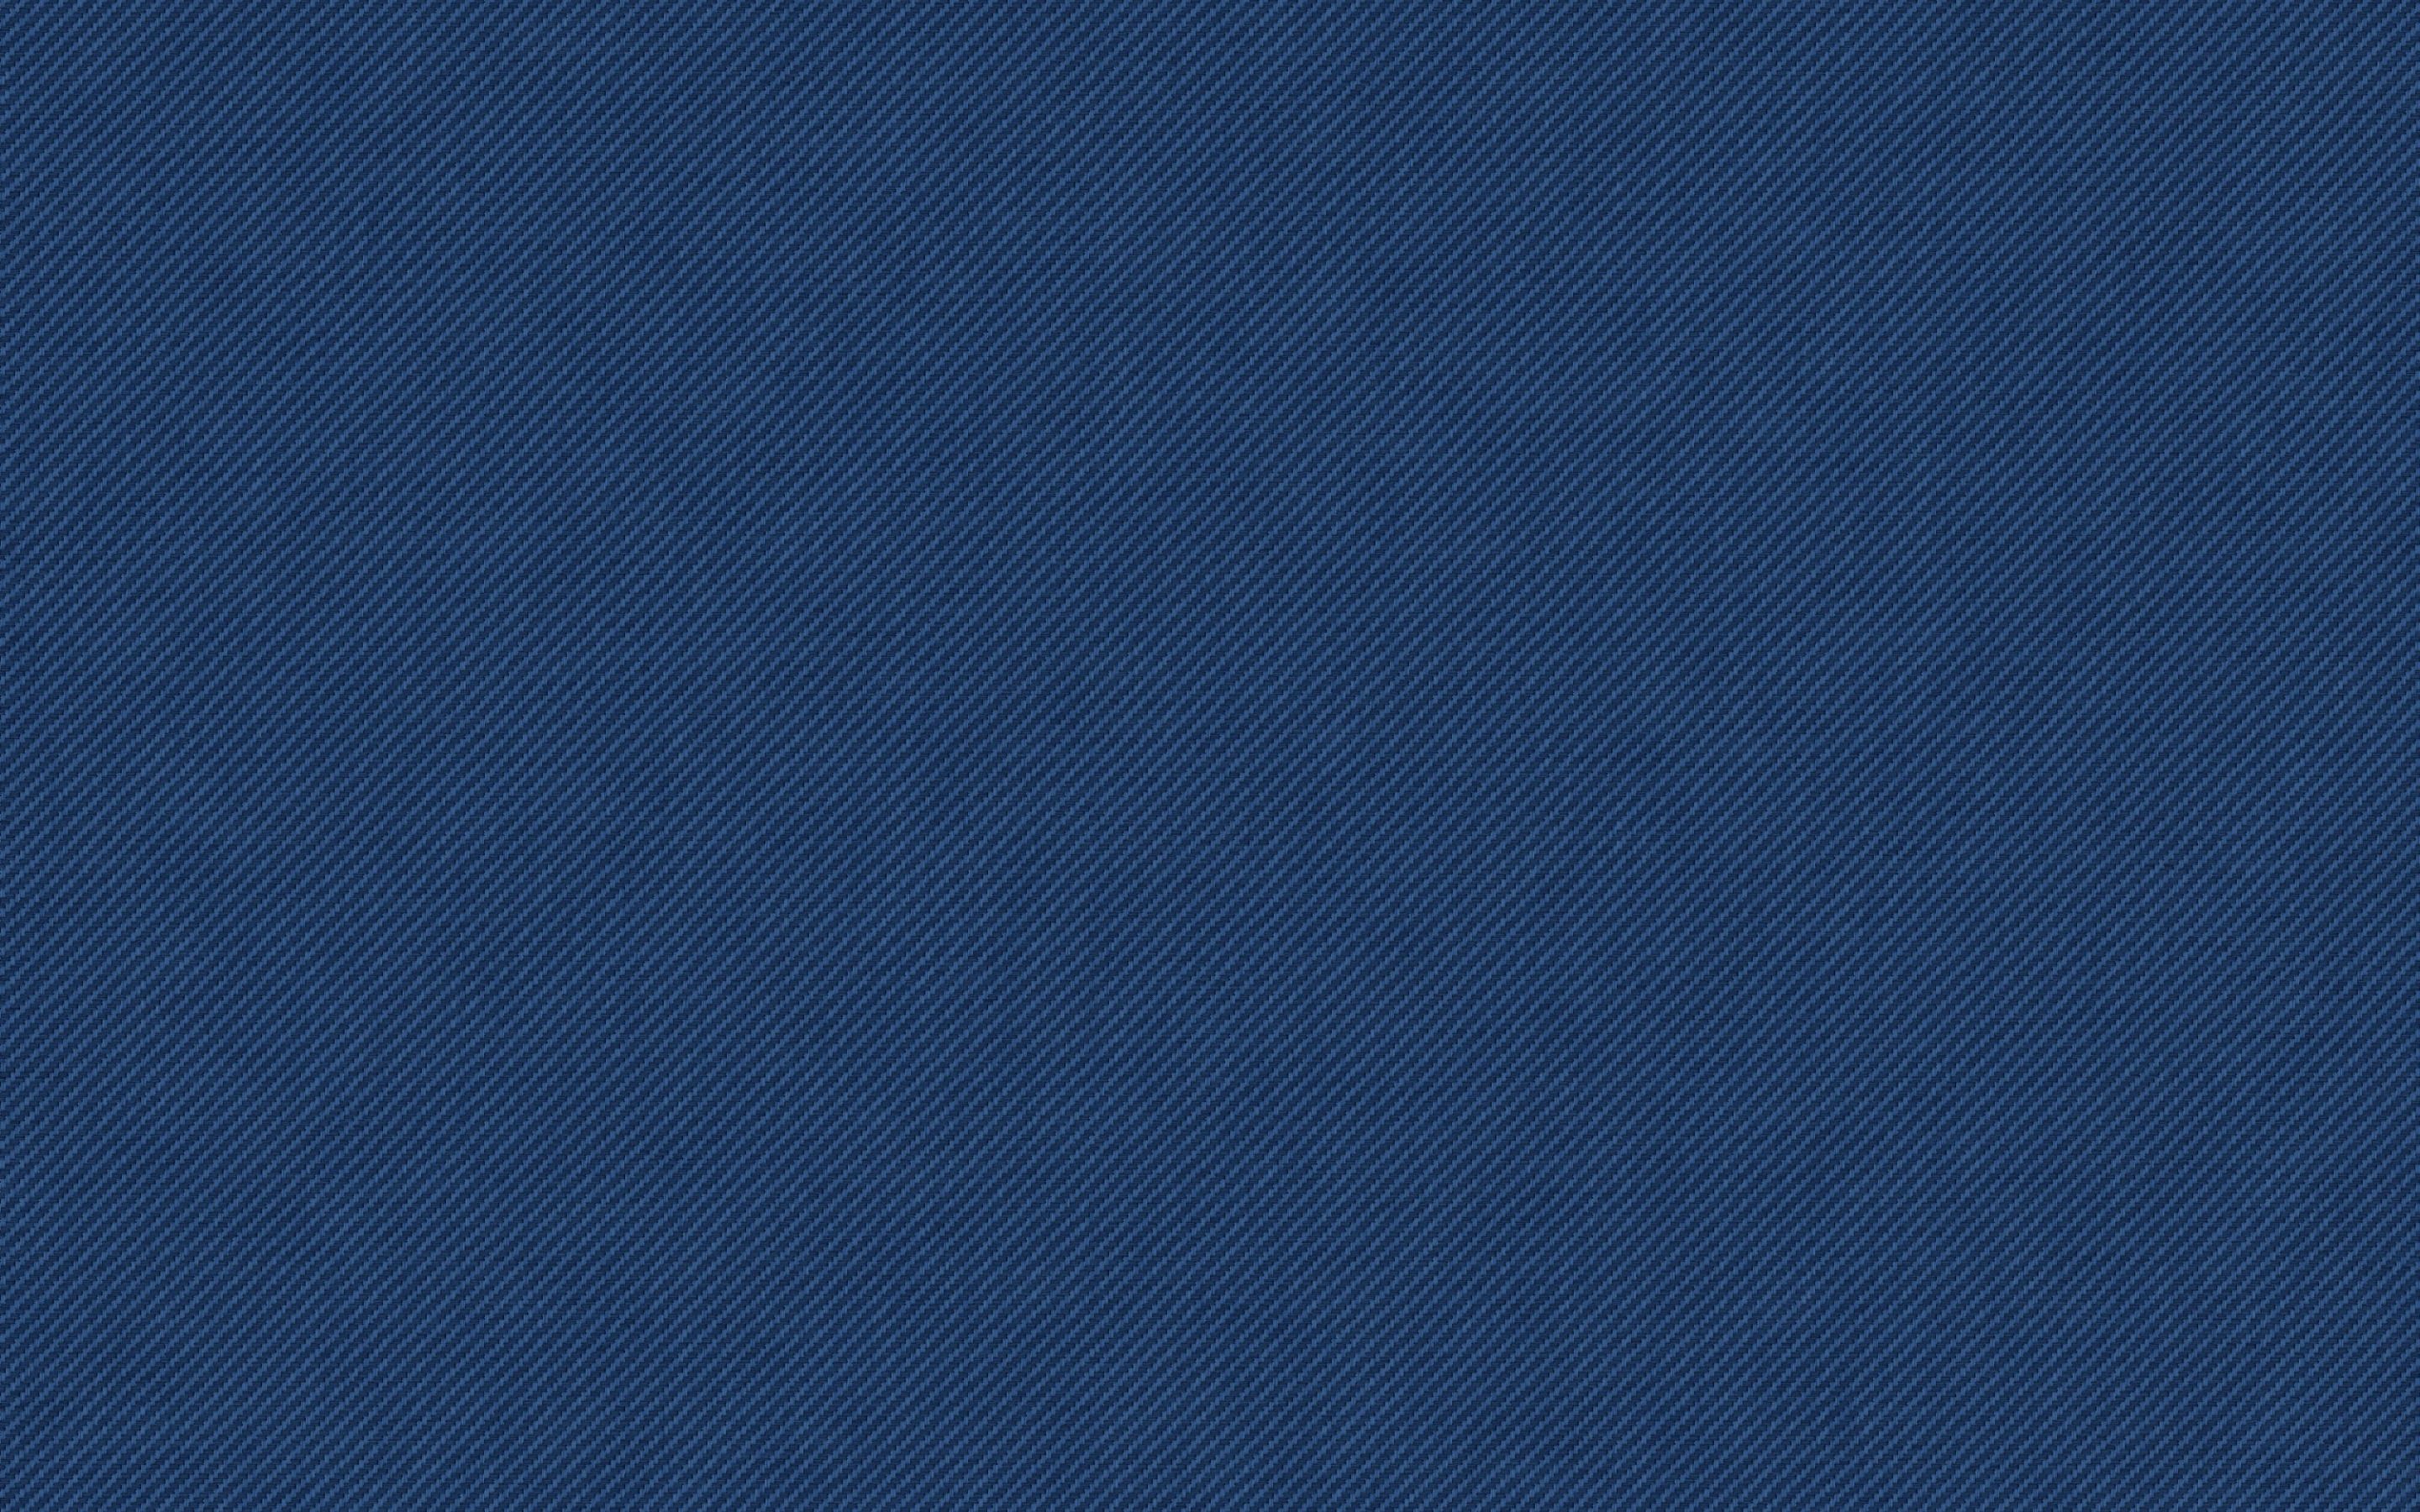 Download wallpaper blue carbon texture, blue carbon background